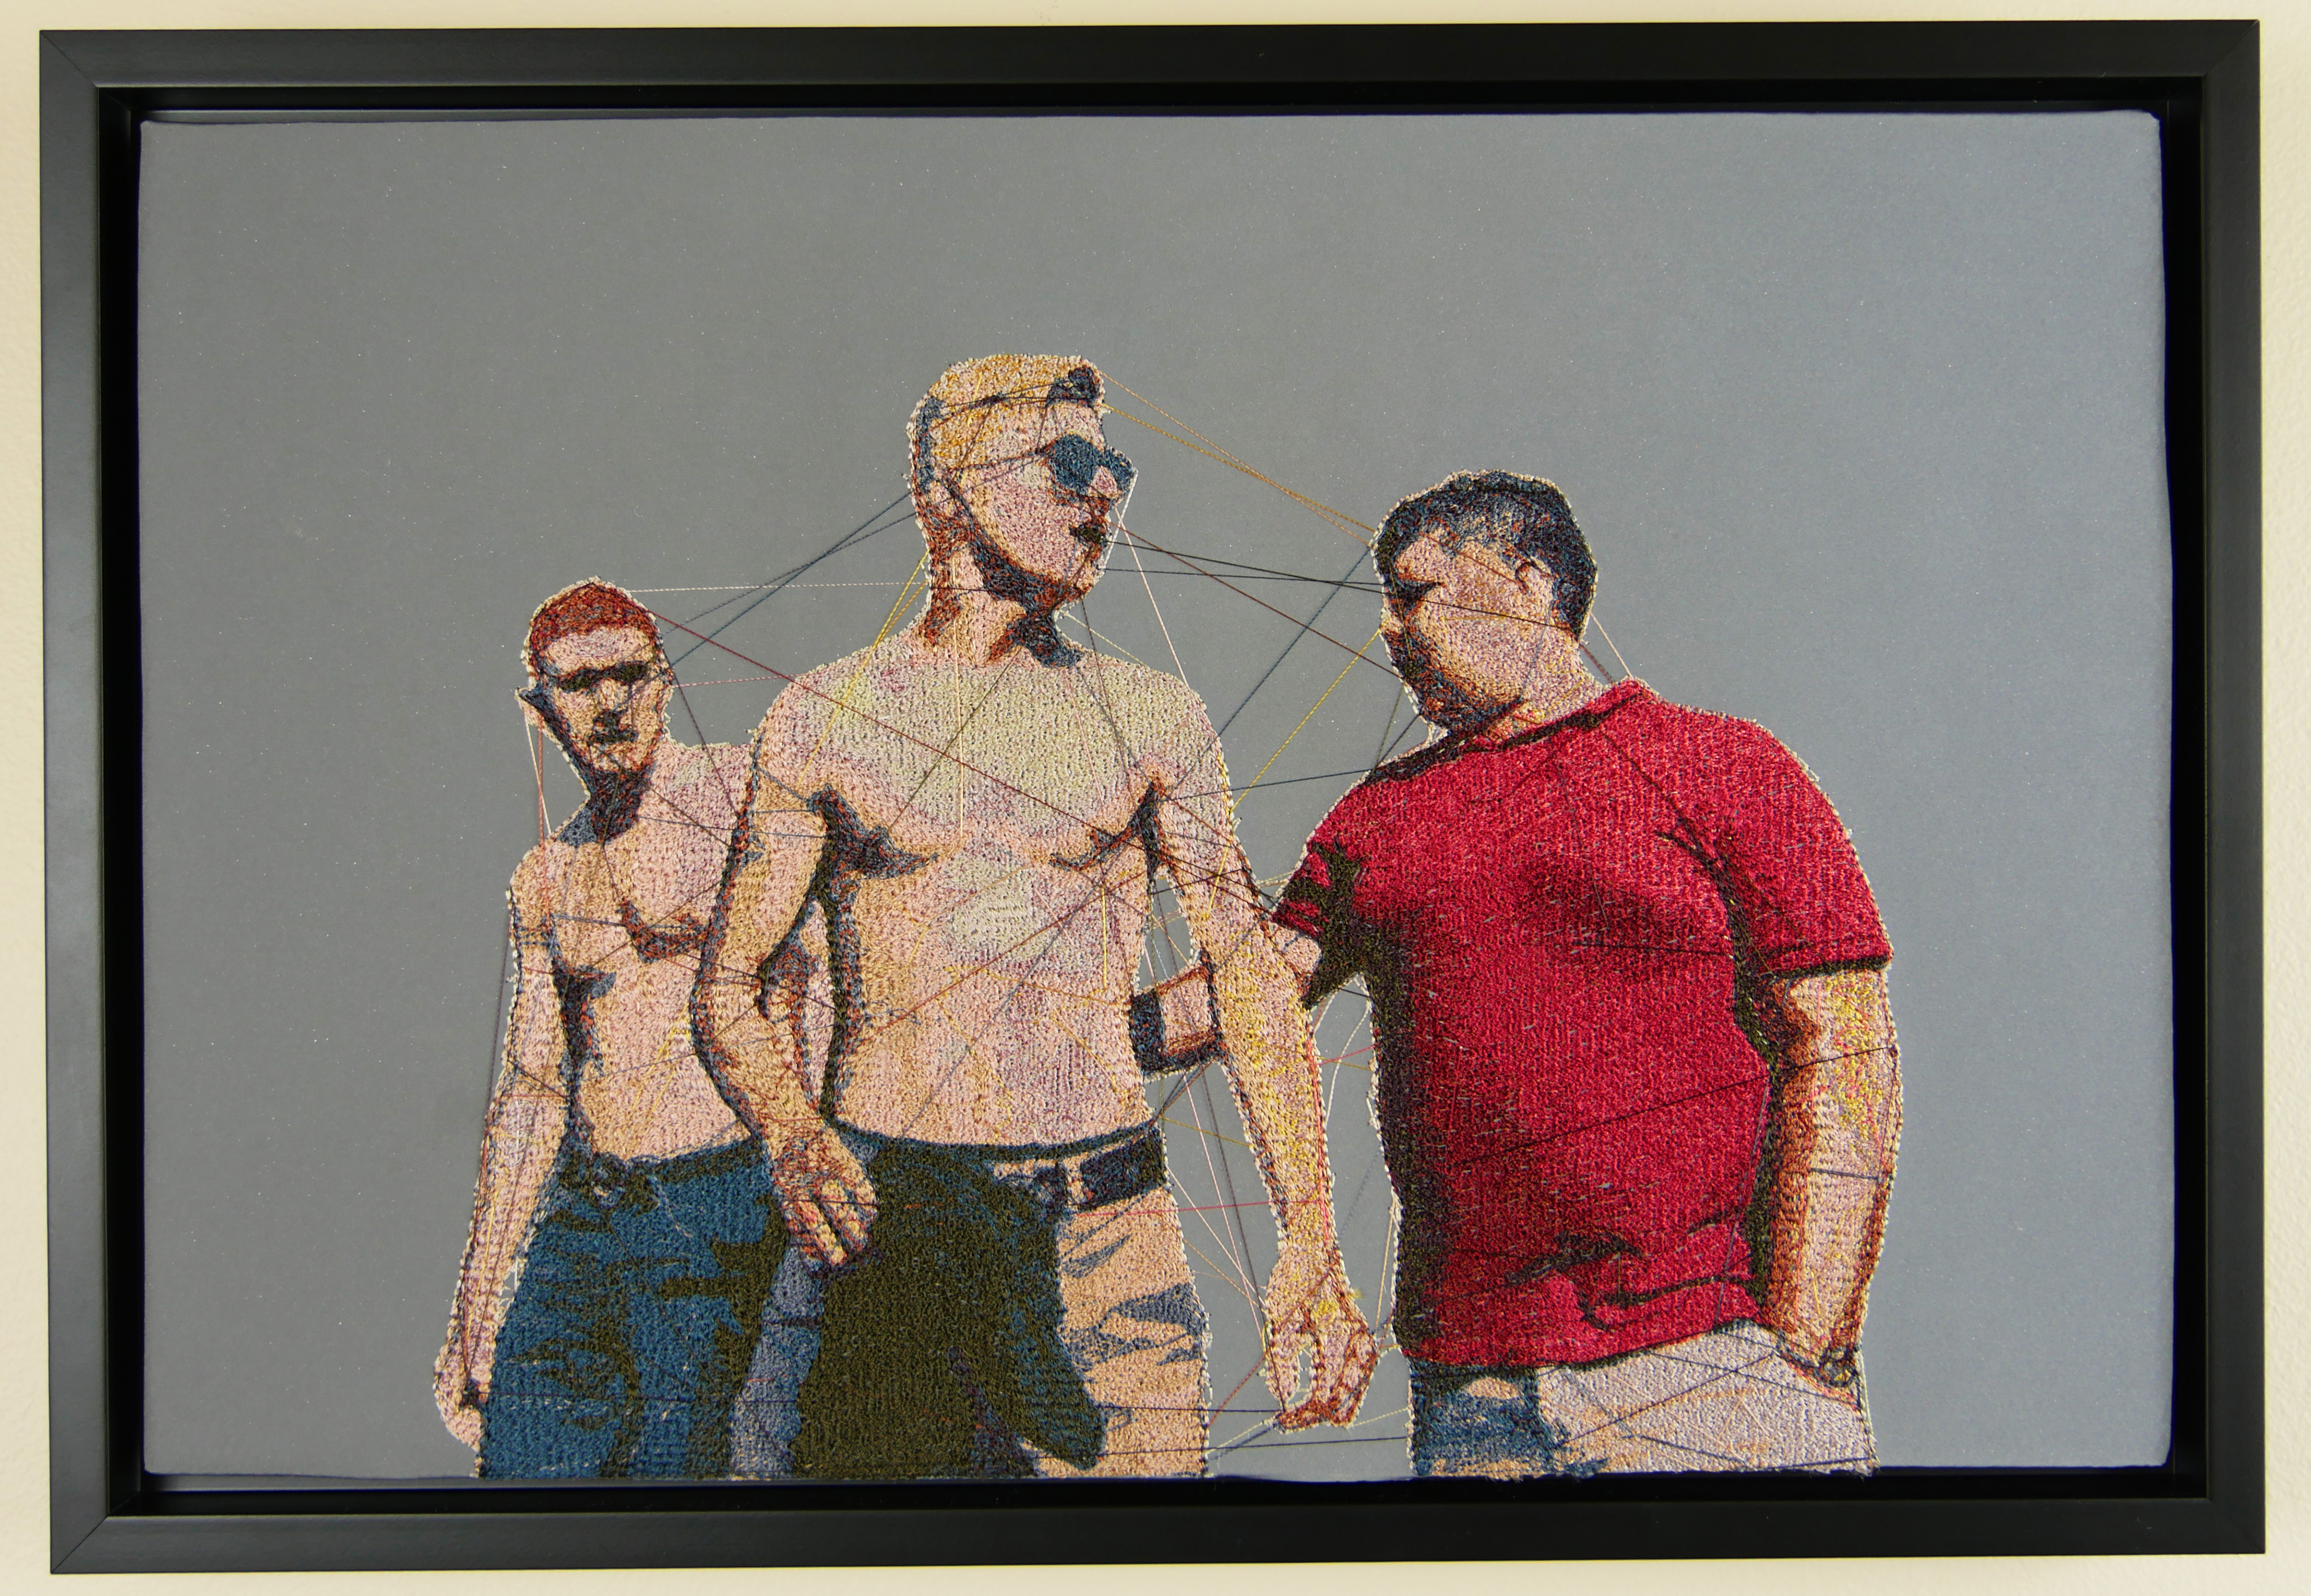 Three Guys, 2020, by Blair Martin Cahill